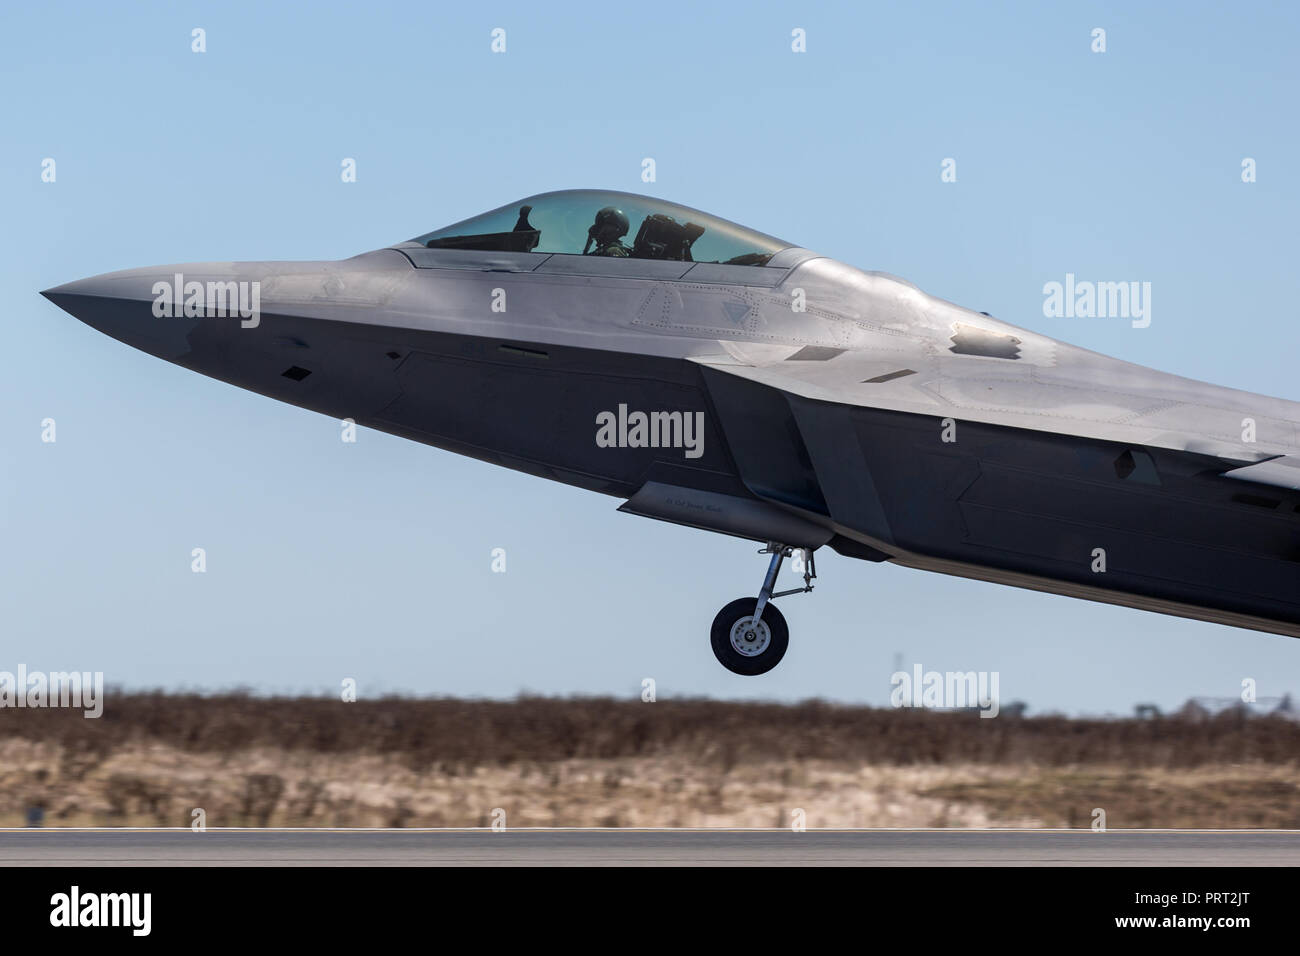 United States Air Force (USAF) Lockheed Martin F-22A Raptor cinquième génération, un bi-moteur, tactique, la furtivité des avions de chasse. Banque D'Images